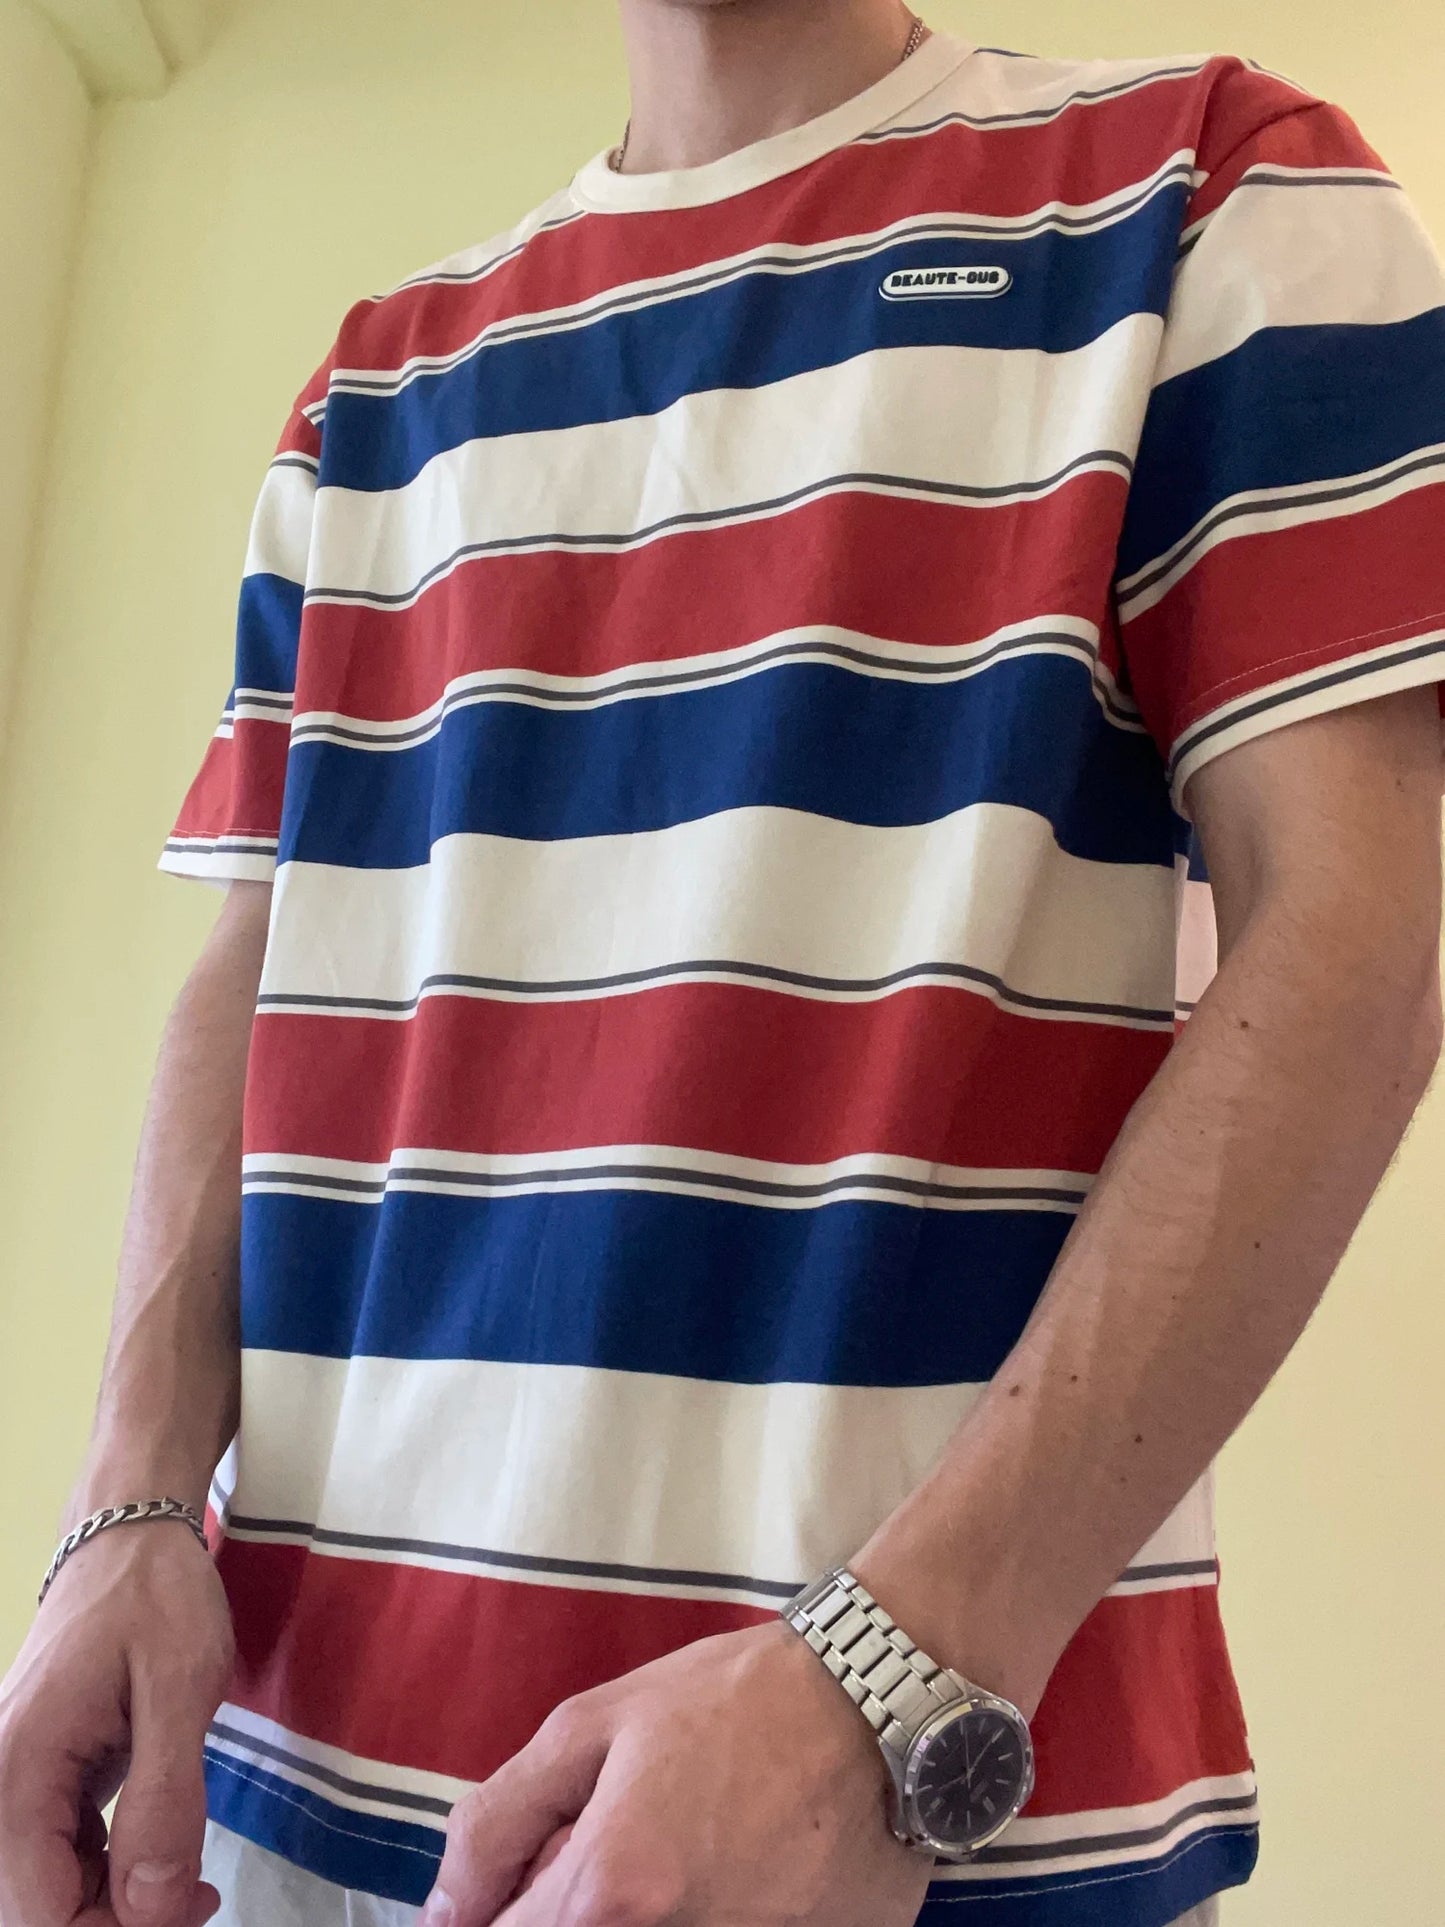 Beaute Ous Stripe T-Shirt